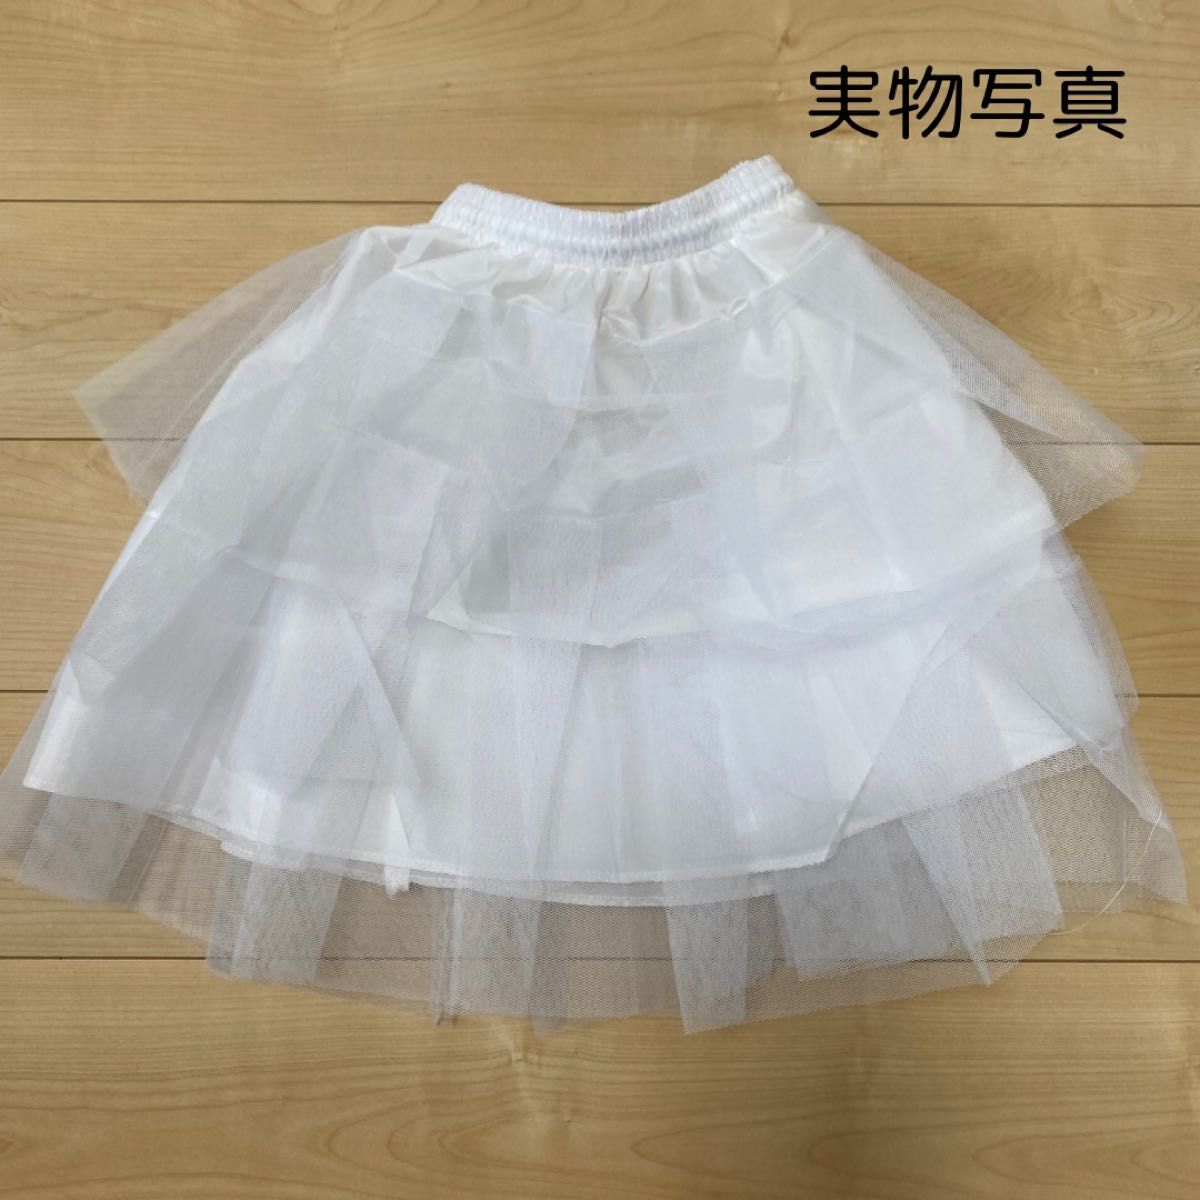 ホワイトパニエ 3段 チュール 衣装 スカート ドレス ボリュームアップ 45cm 結婚式 コスプレ 白 発表会 子供ドレス ミニ